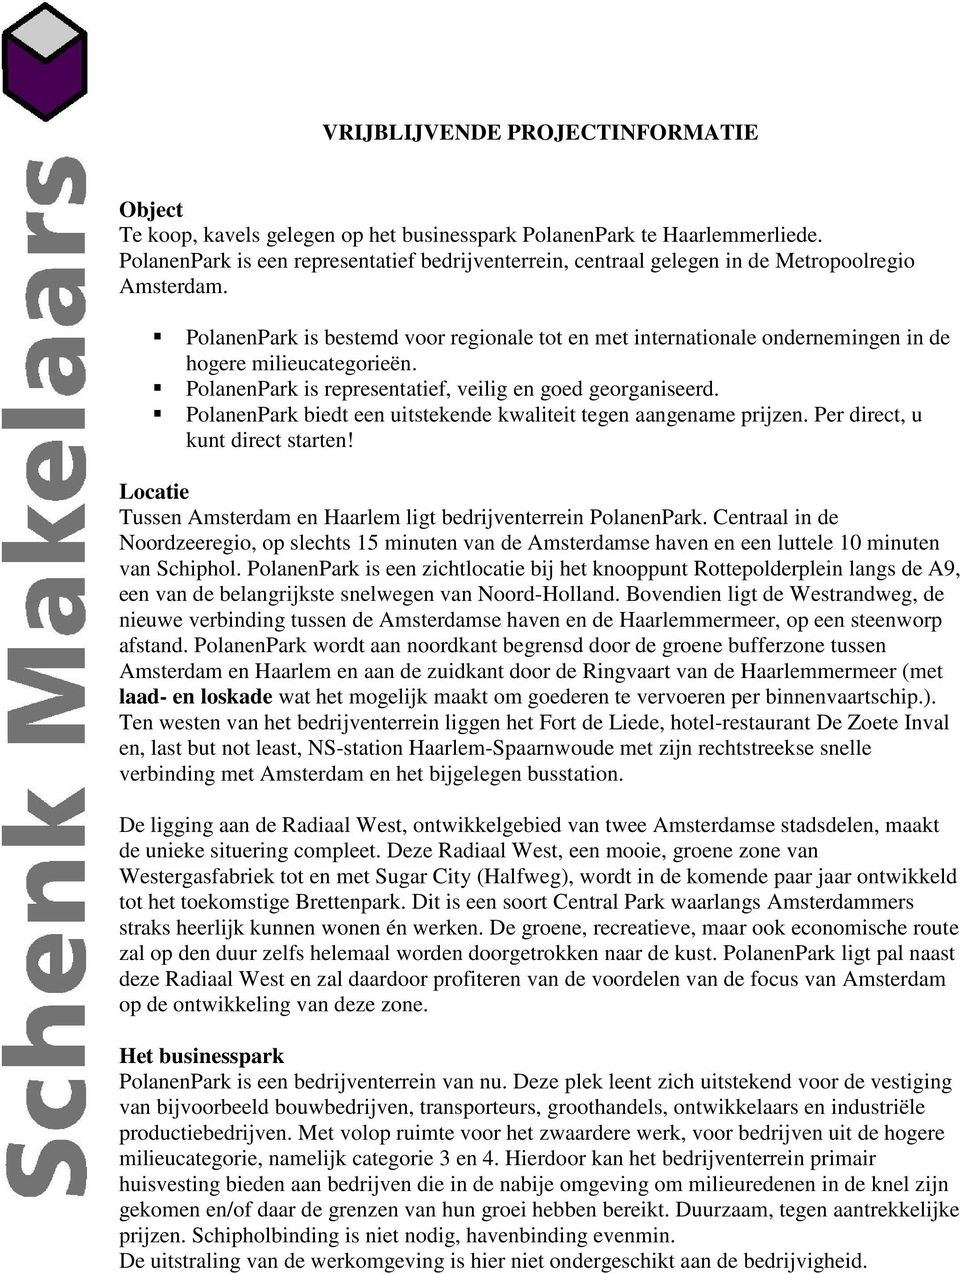 PolanenPark is bestemd voor regionale tot en met internationale ondernemingen in de hogere milieucategorieën. PolanenPark is representatief, veilig en goed georganiseerd.